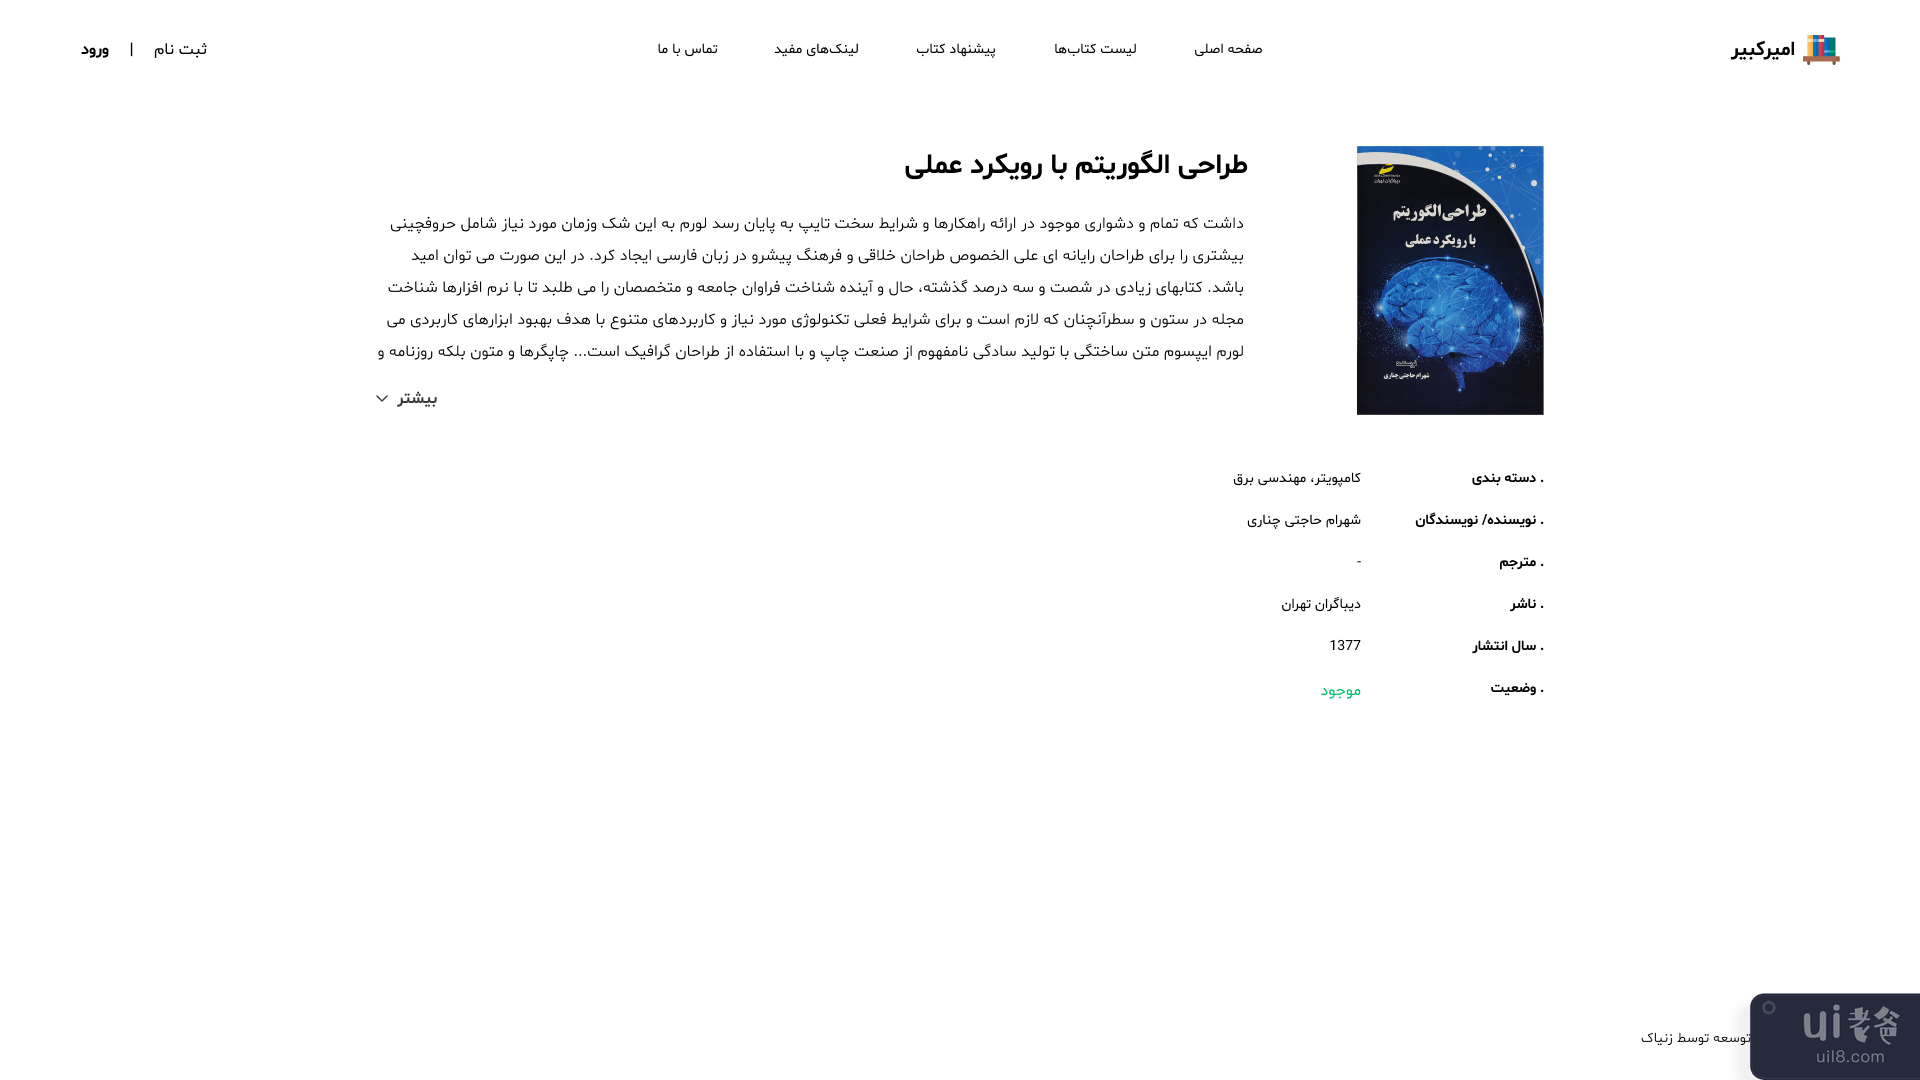 阿米尔卡比尔图书馆网站用户界面(Amirkabir Library Website UI)插图4